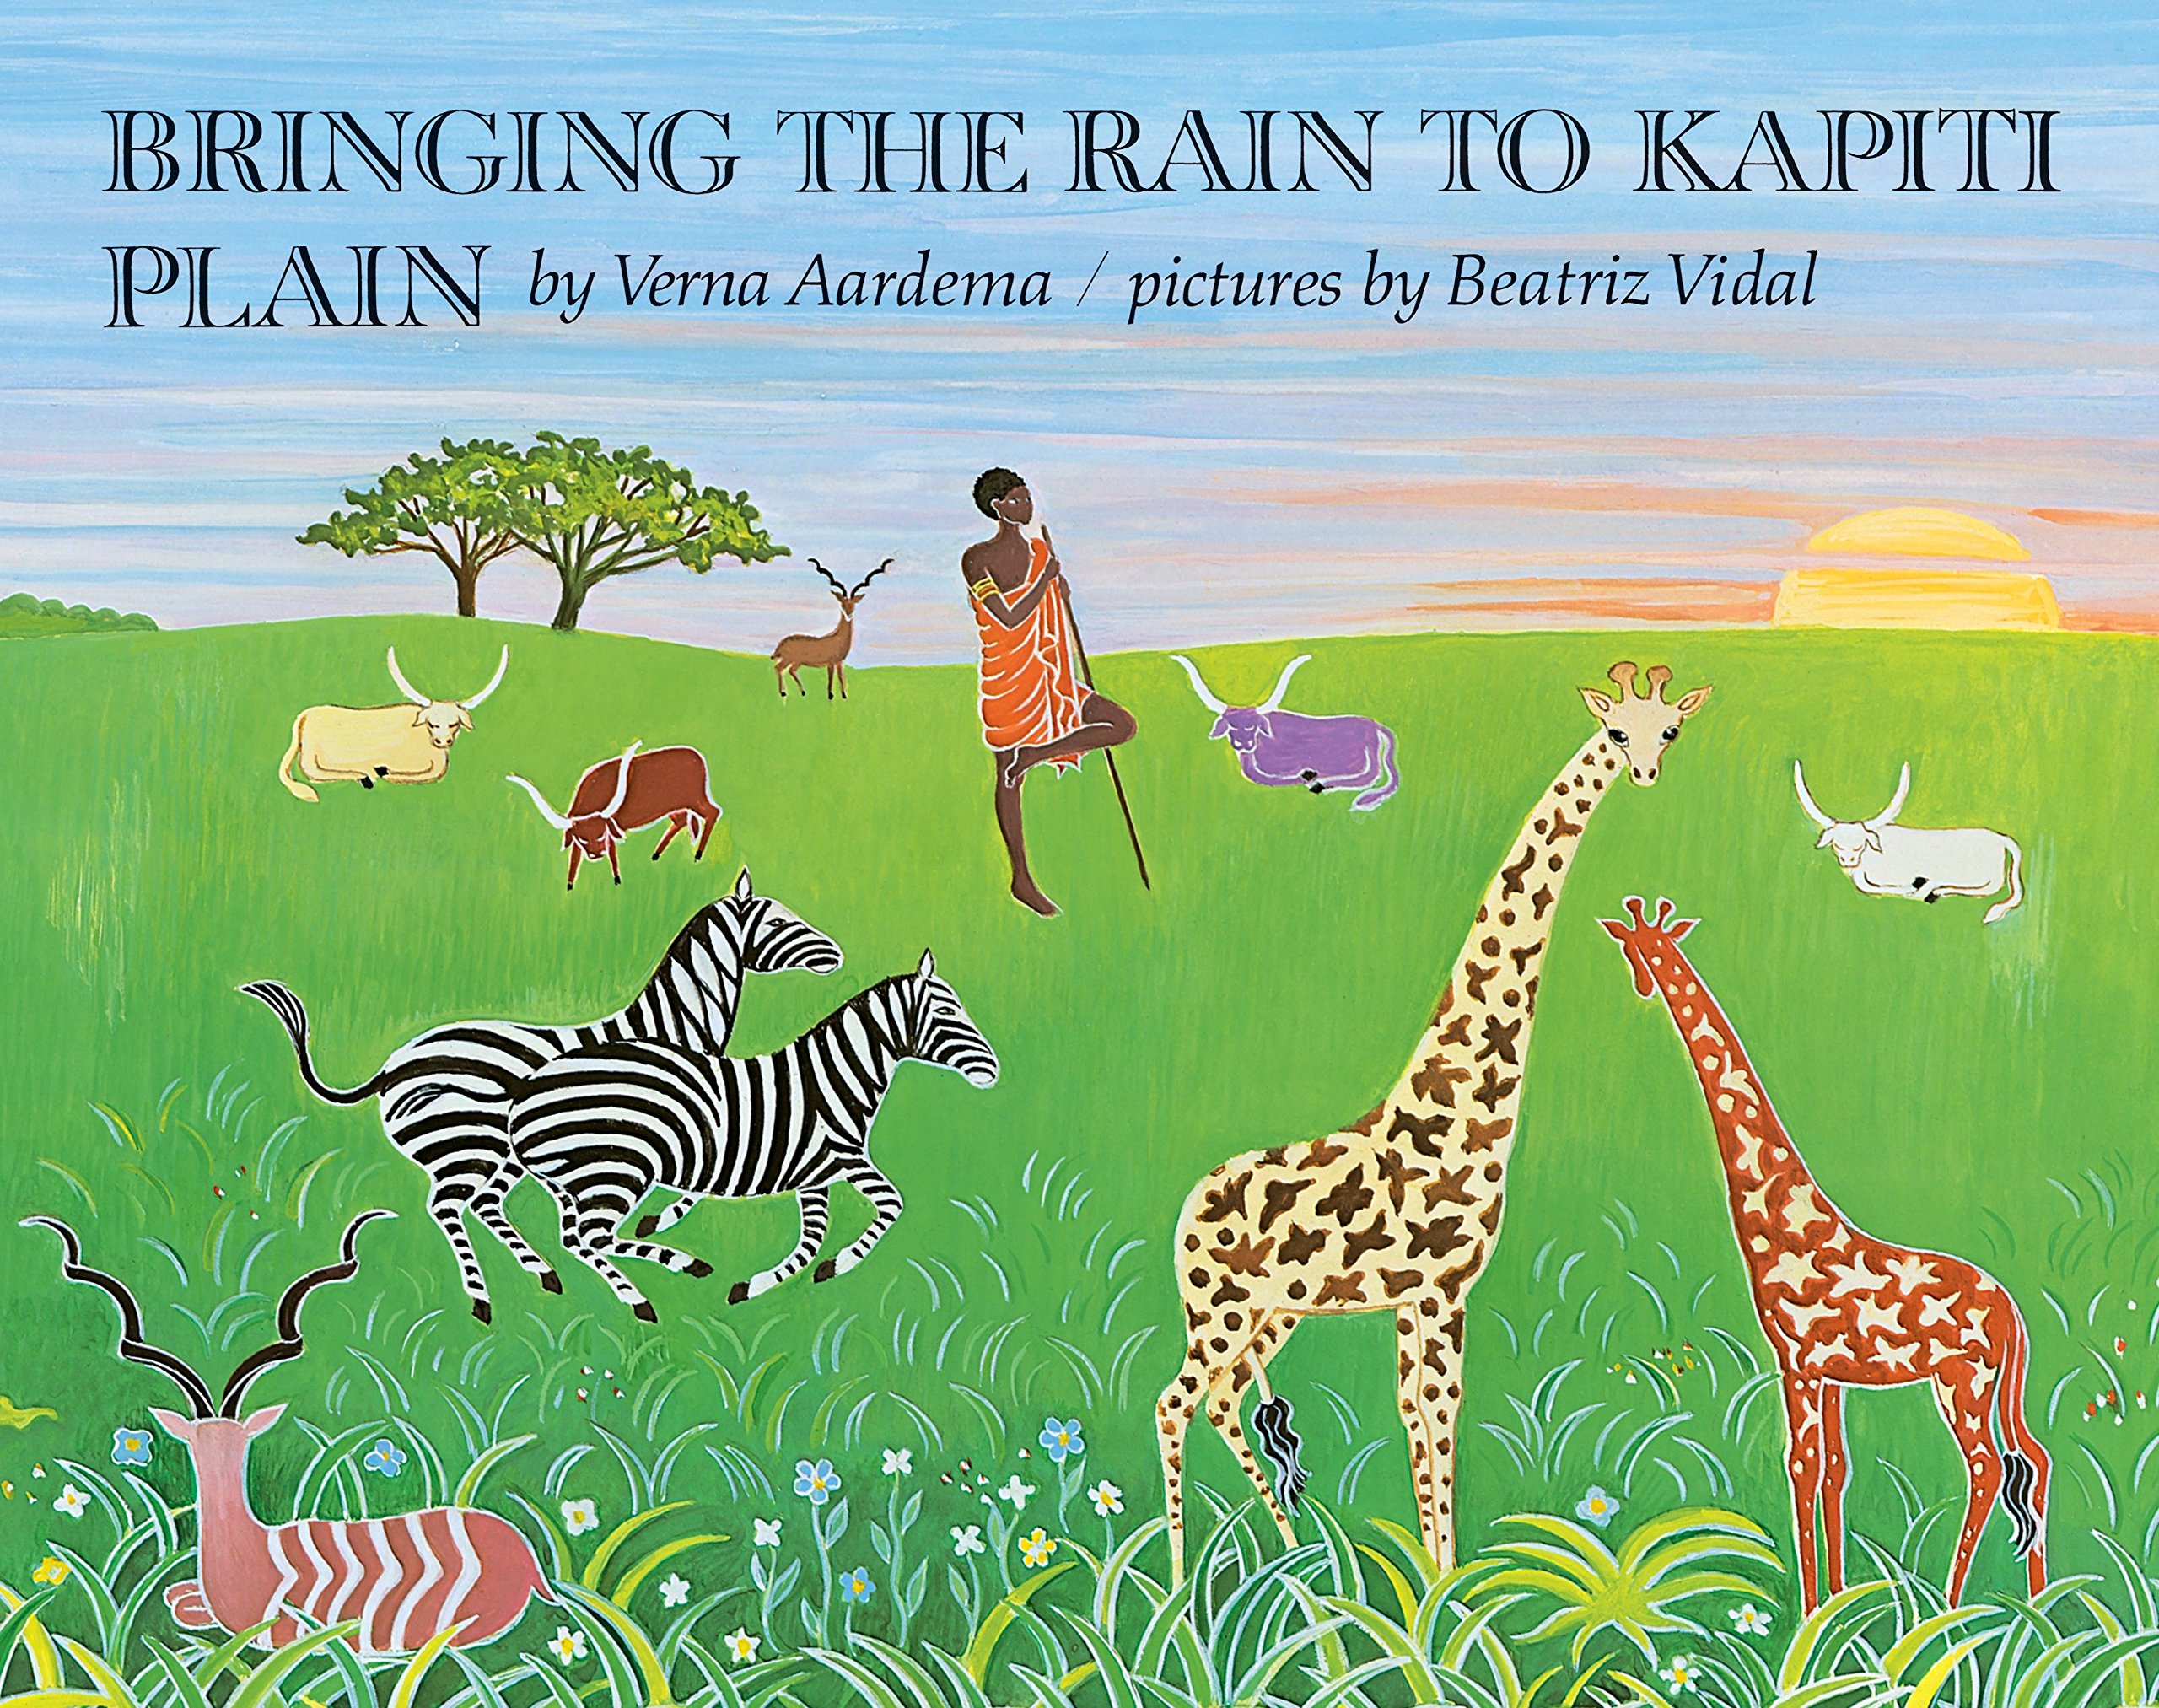 Image for "Bringing the Rain to Kapiti Plain"